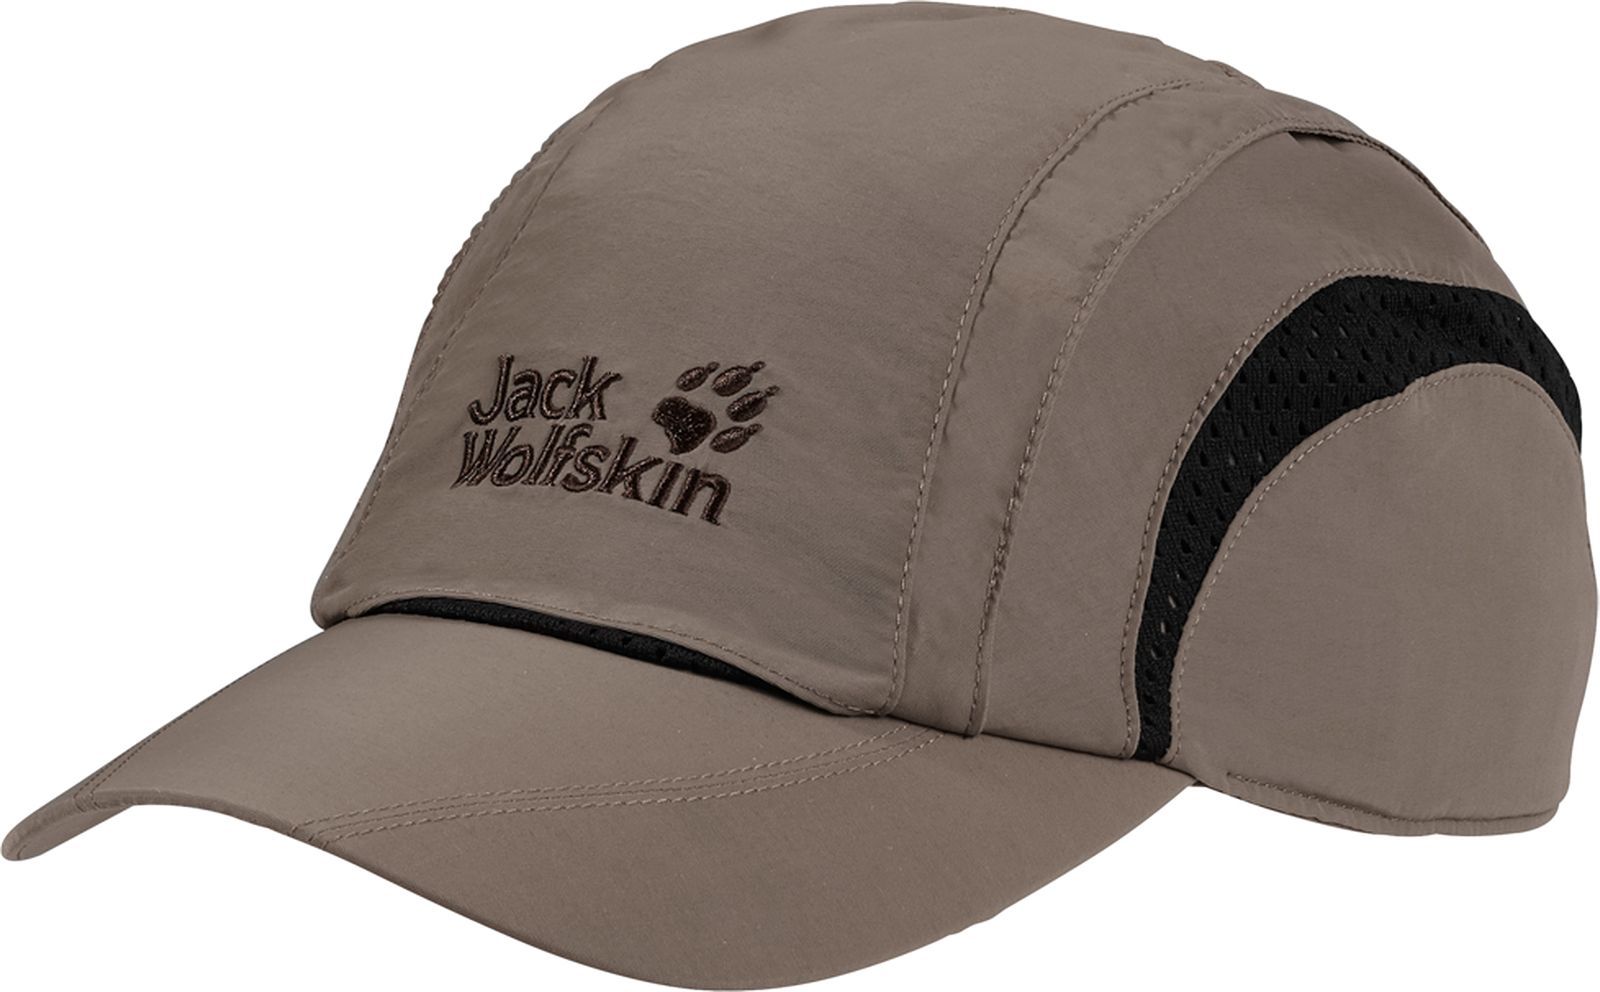  Jack Wolfskin Vent Pro Cap, : -. 19222-5116.  M (54/57)